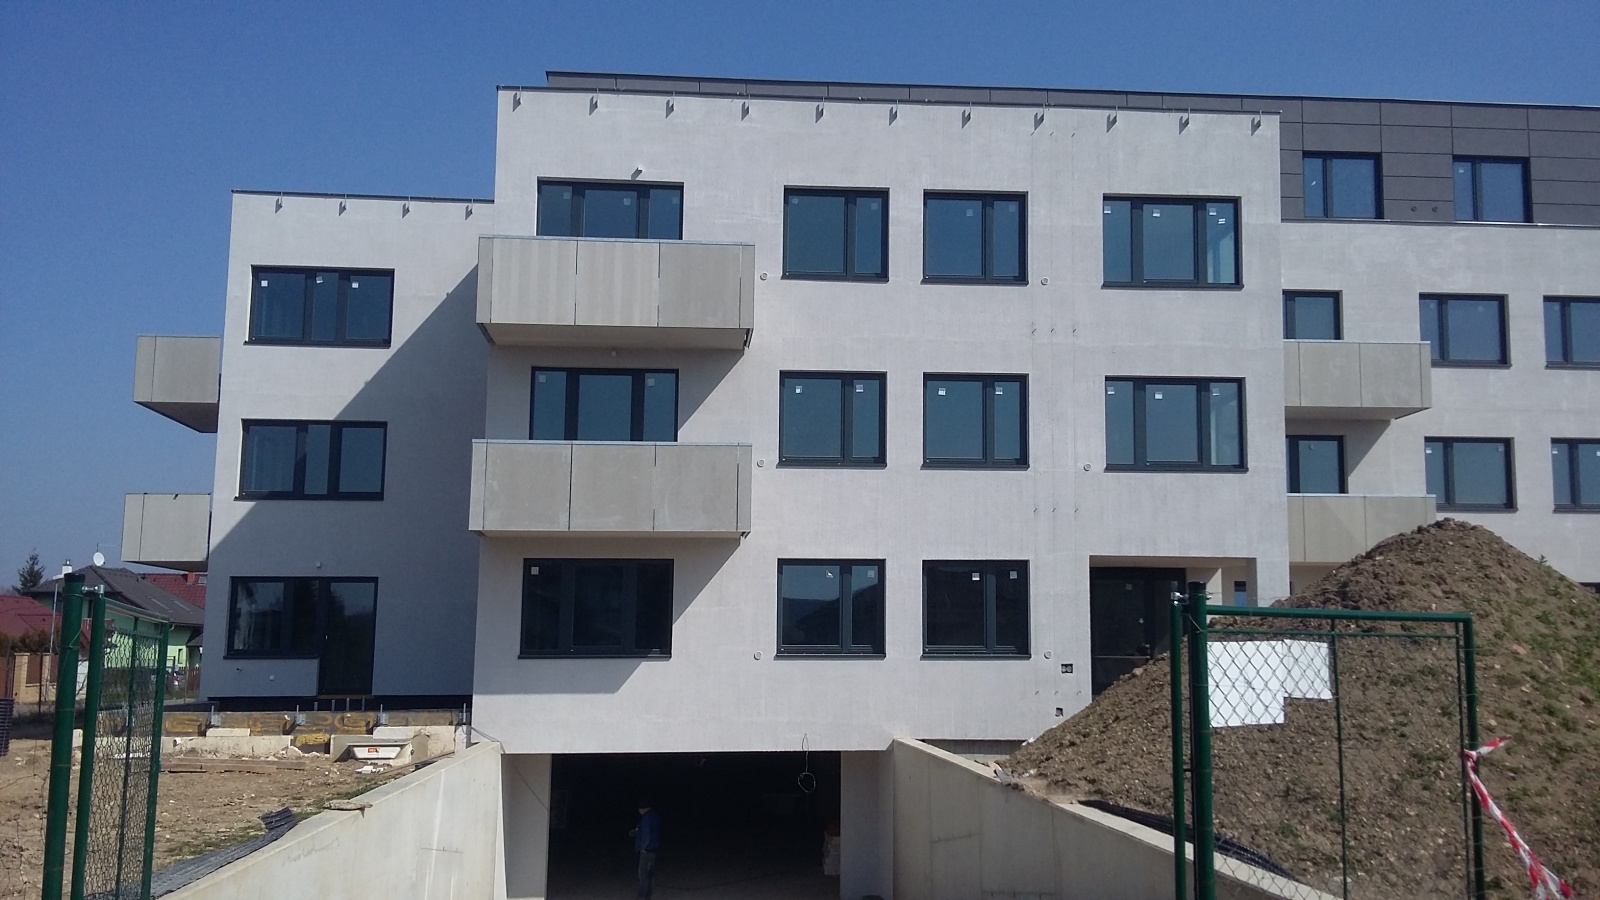 Byt 2+kk, 62.70 m2, Horoměřice, Projekt Višnovka - bytové domy